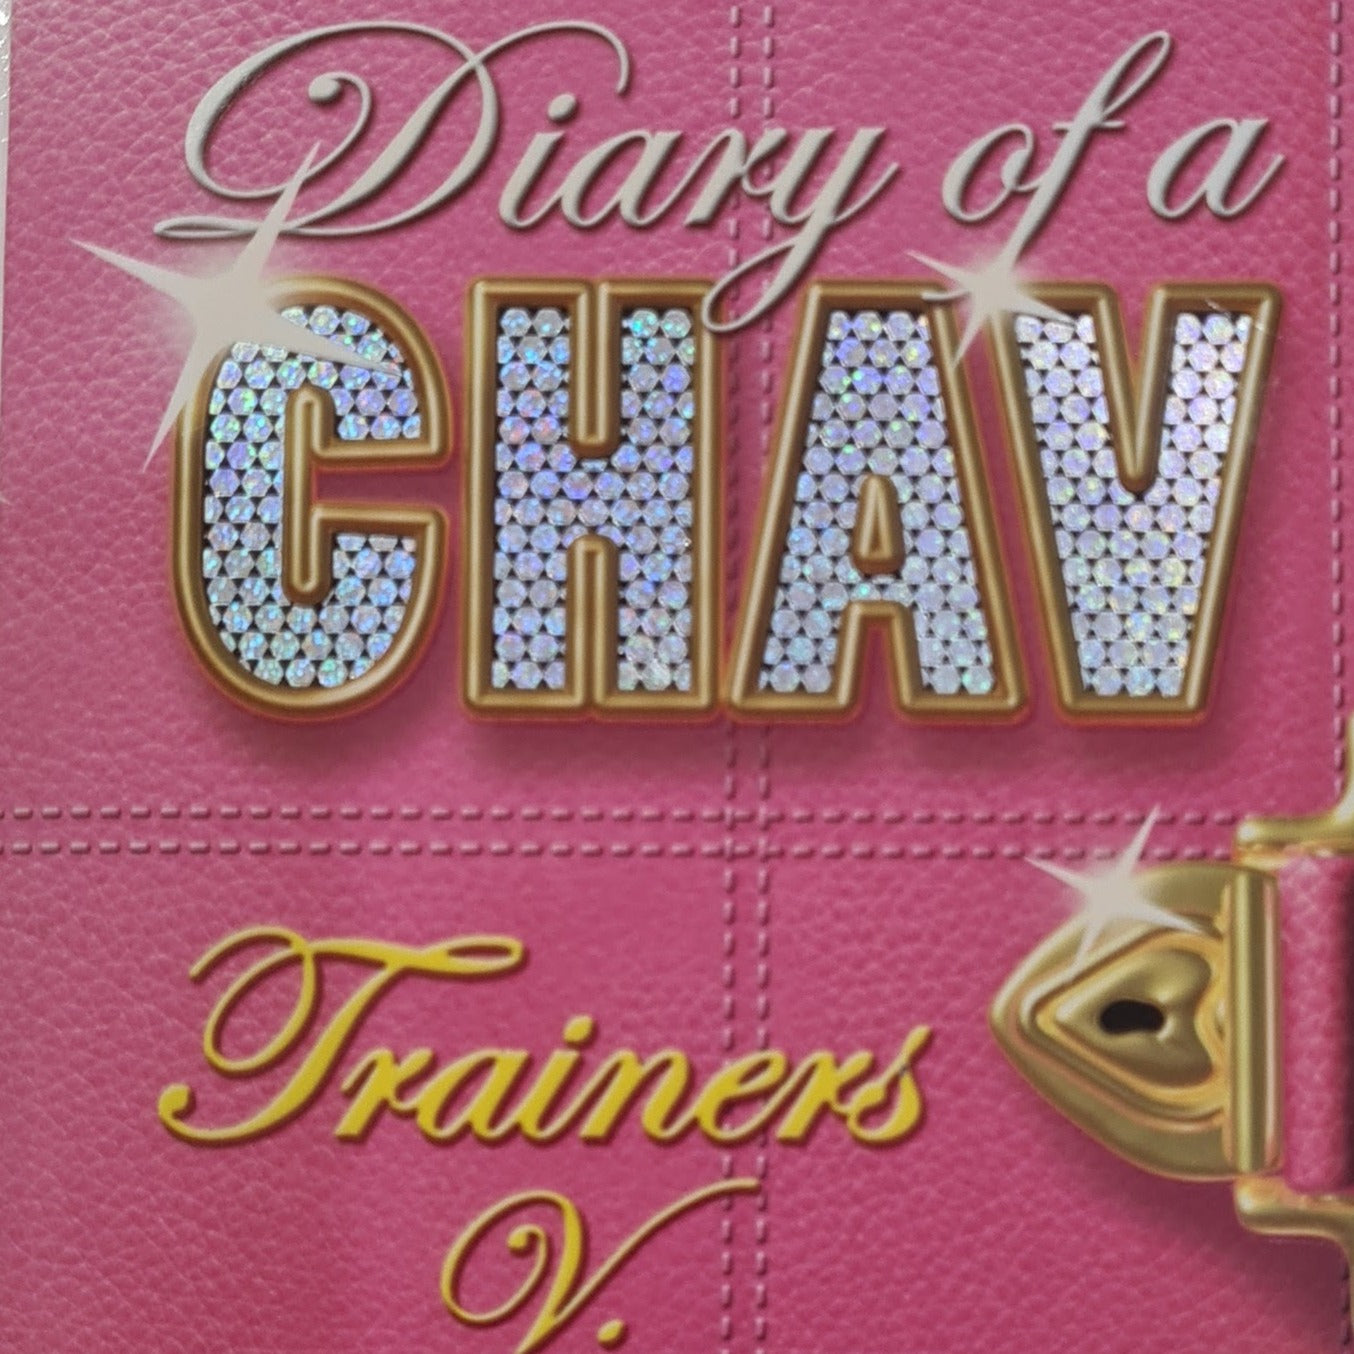 Diary of a CHAV